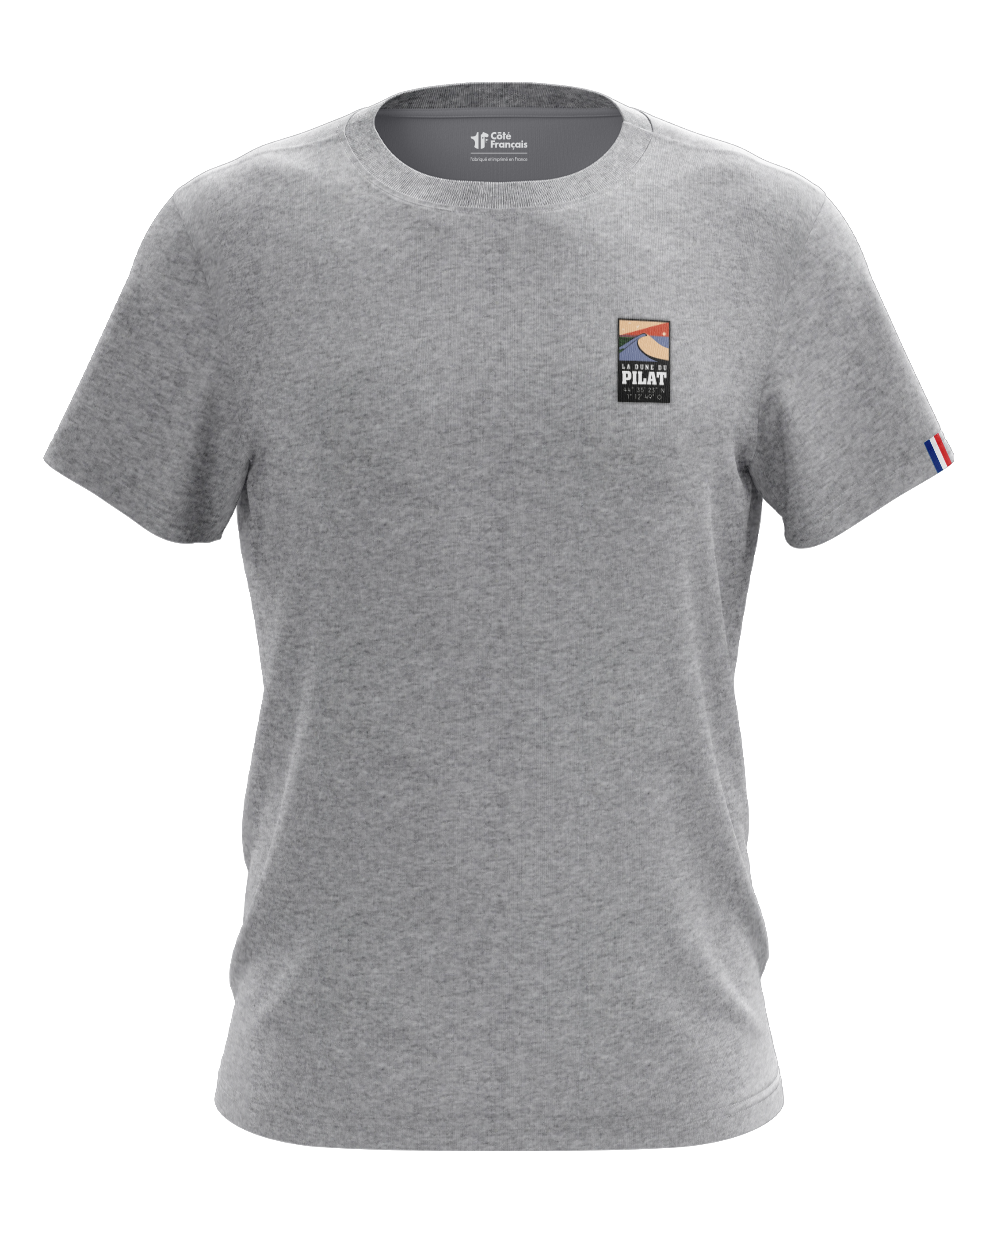 T-Shirt "Dune du pilat" - gris chiné